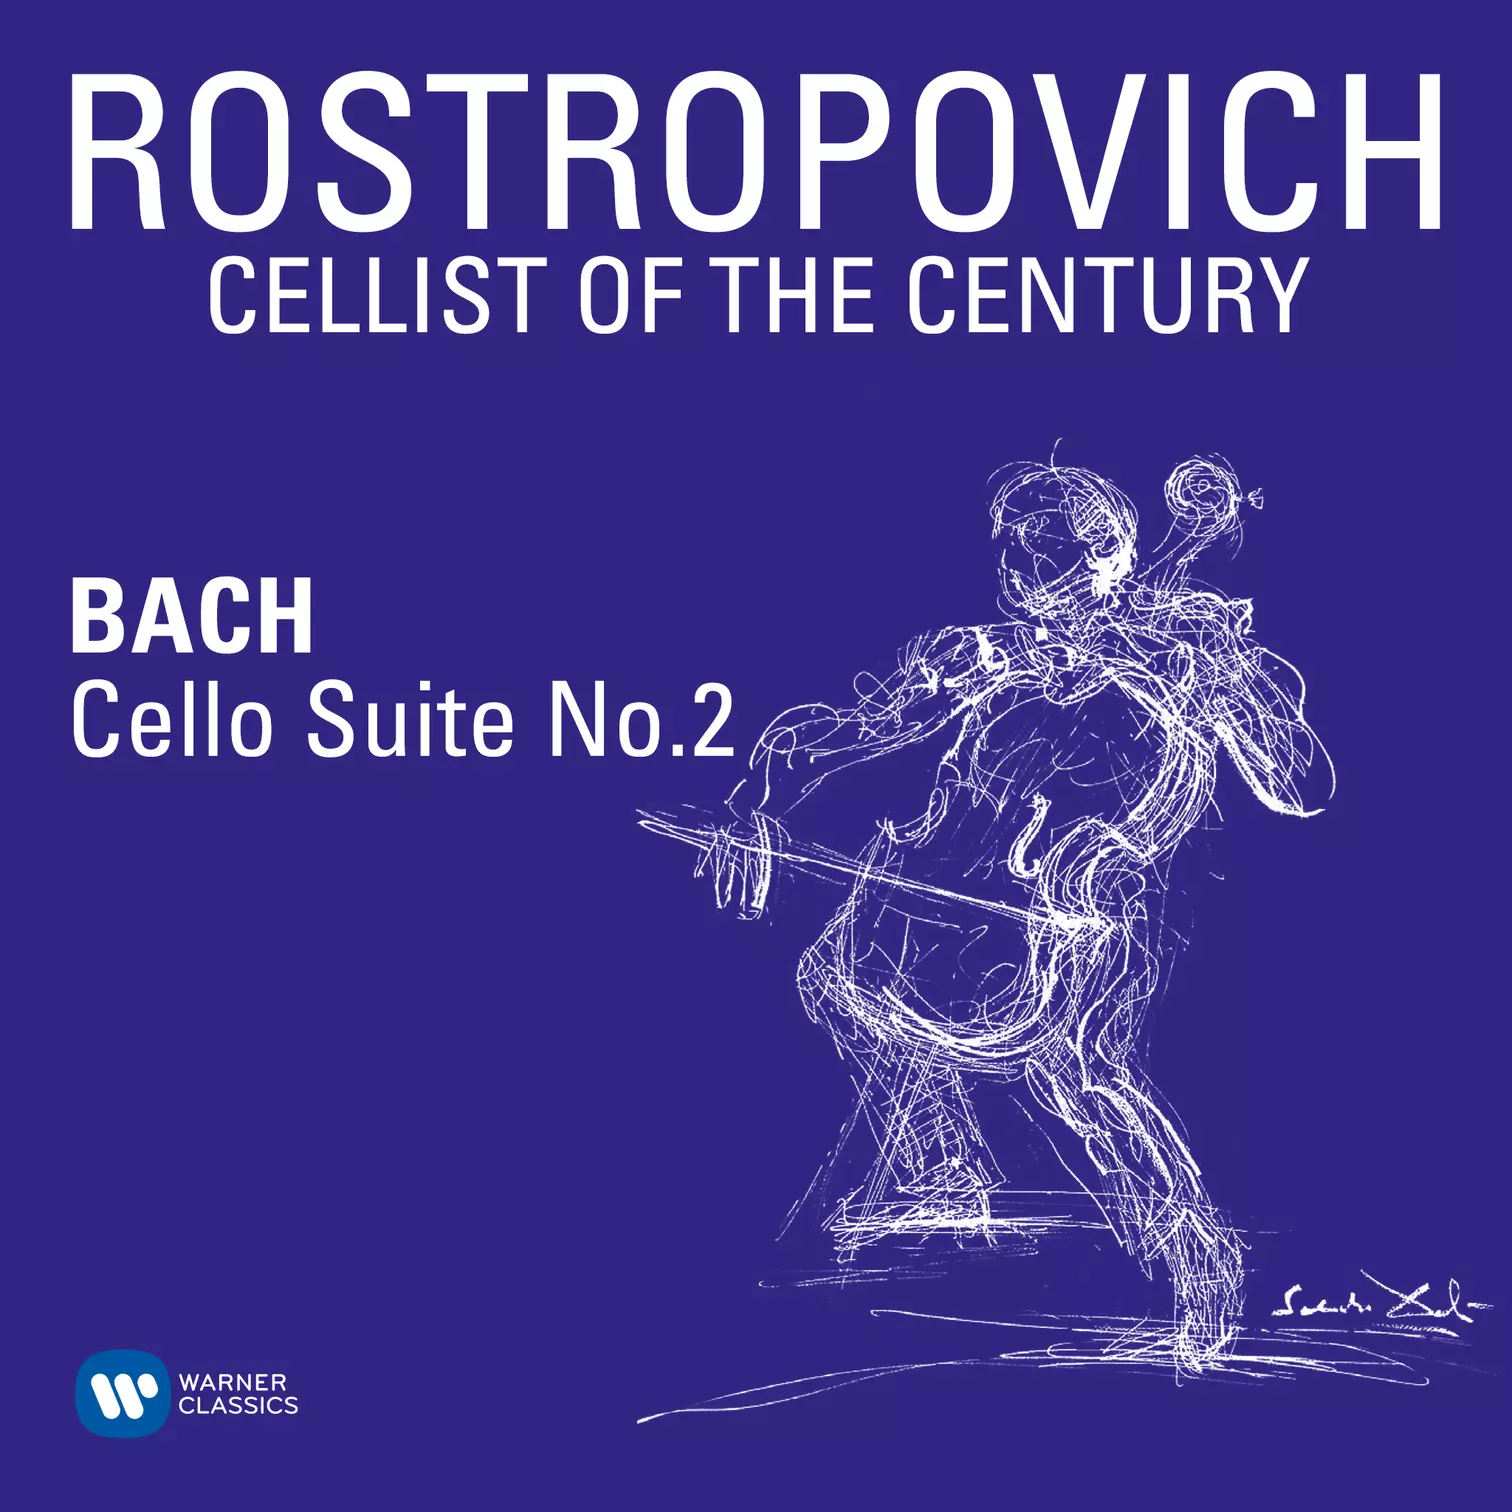 Bach: Cello Suite No. 2 in D Minor